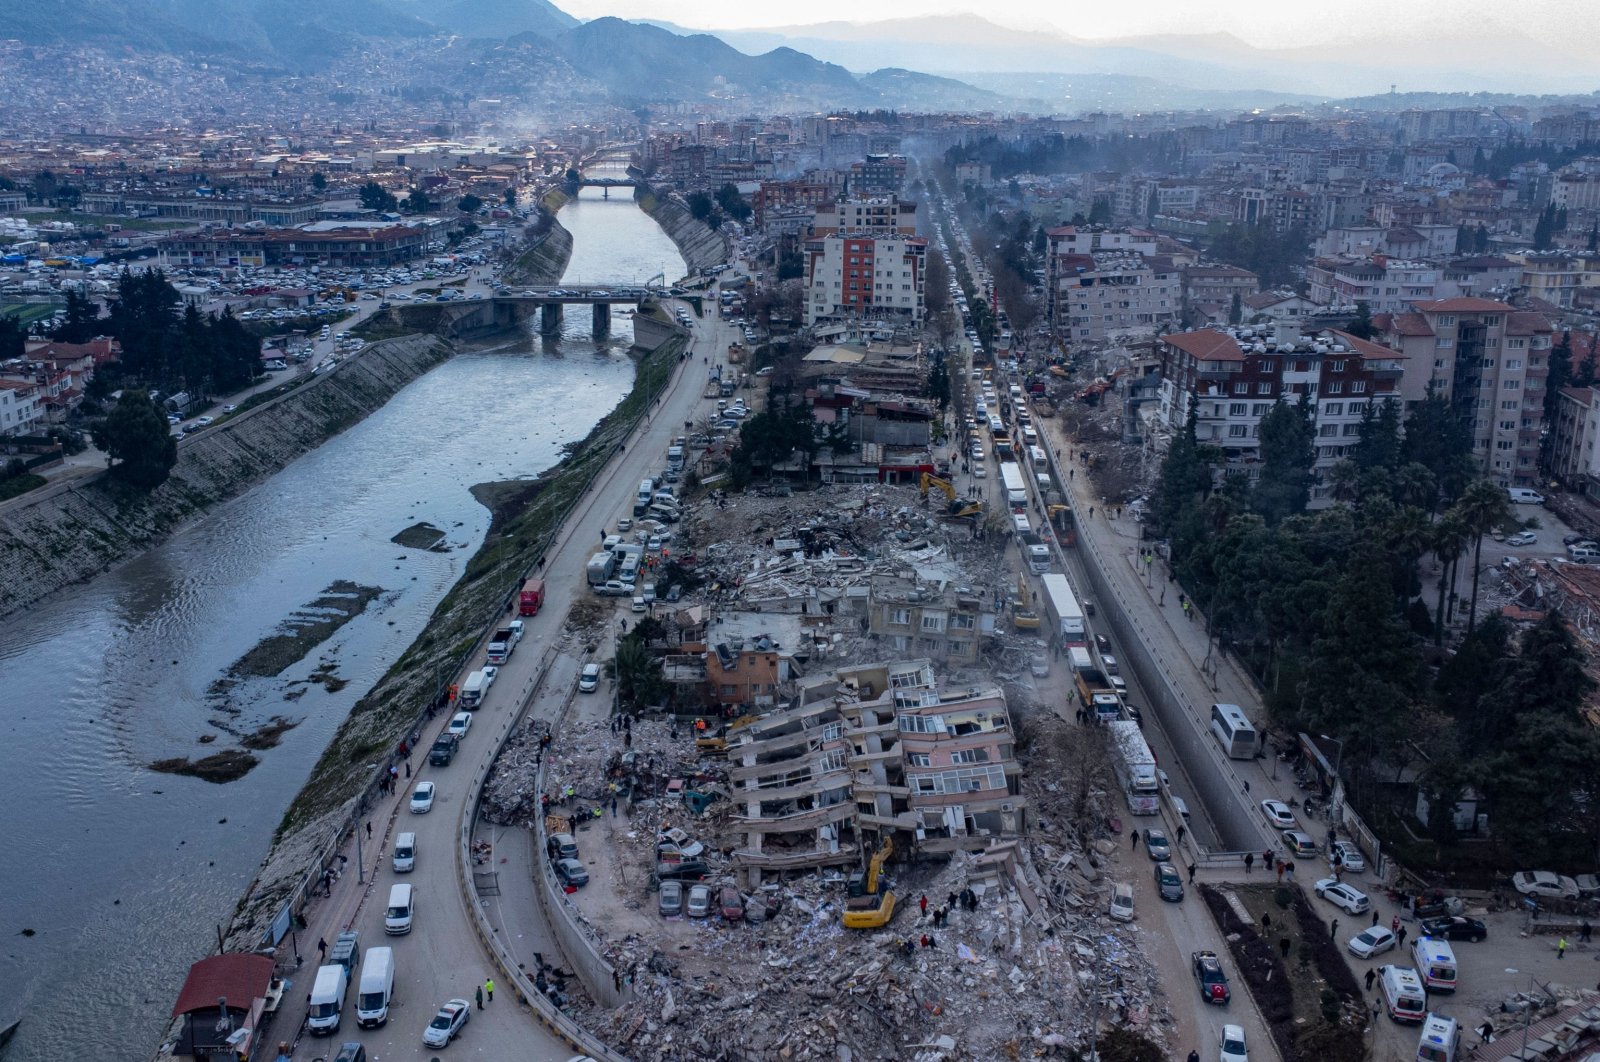 UAV Bayraktar memberikan dukungan tanpa gangguan untuk bantuan gempa bumi di Türkiye